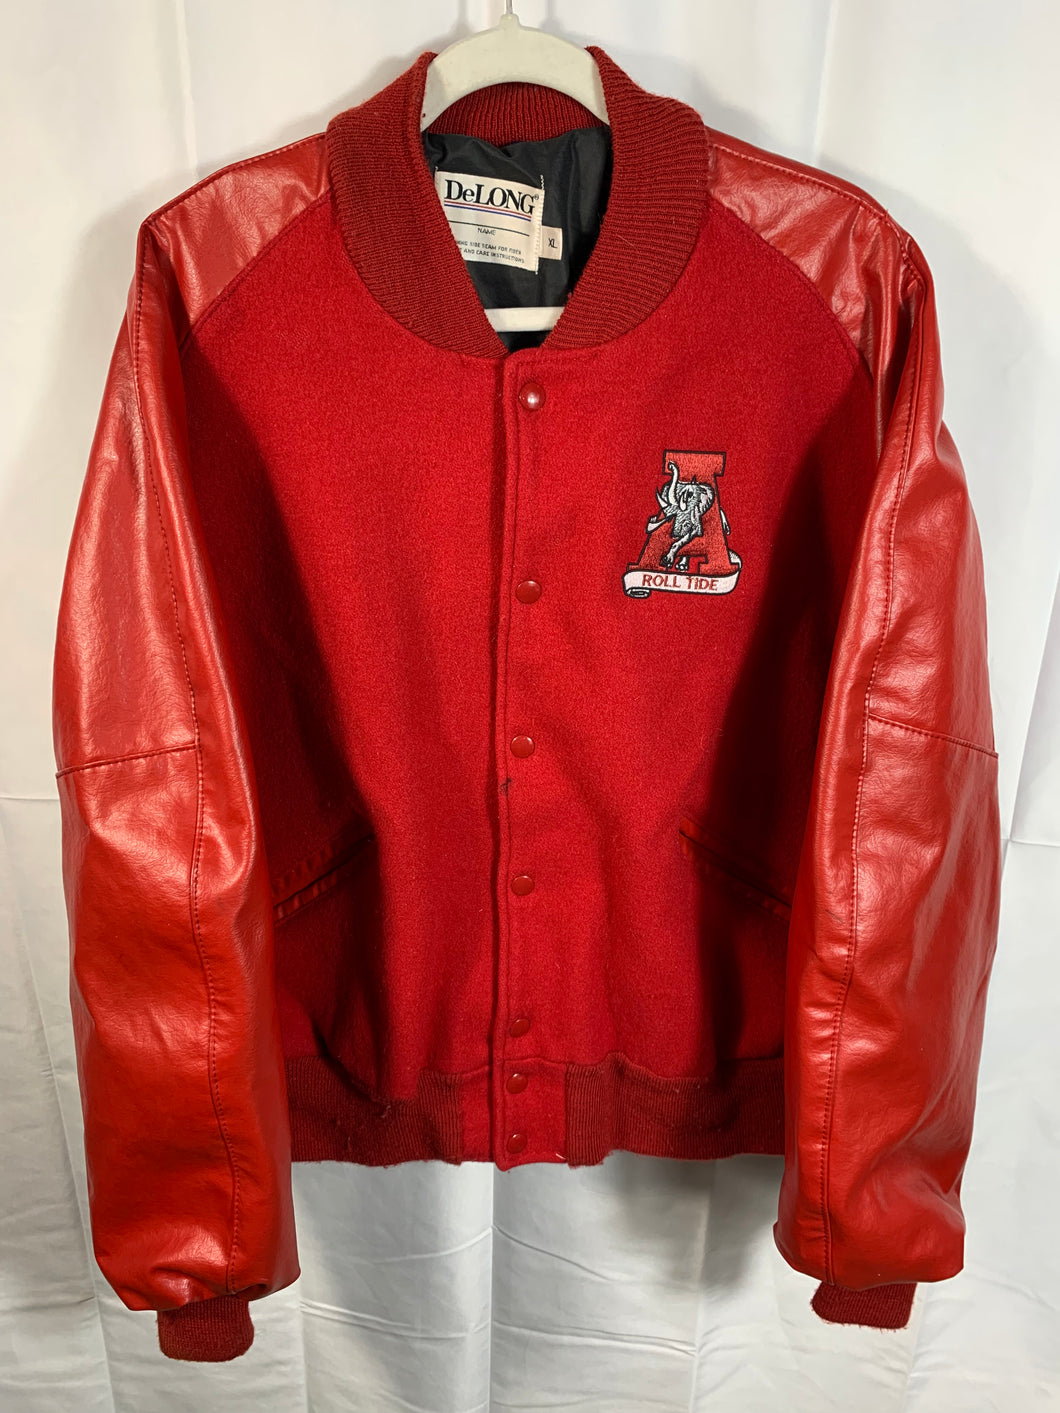 Vintage Alabama Red Leather Jacket XL